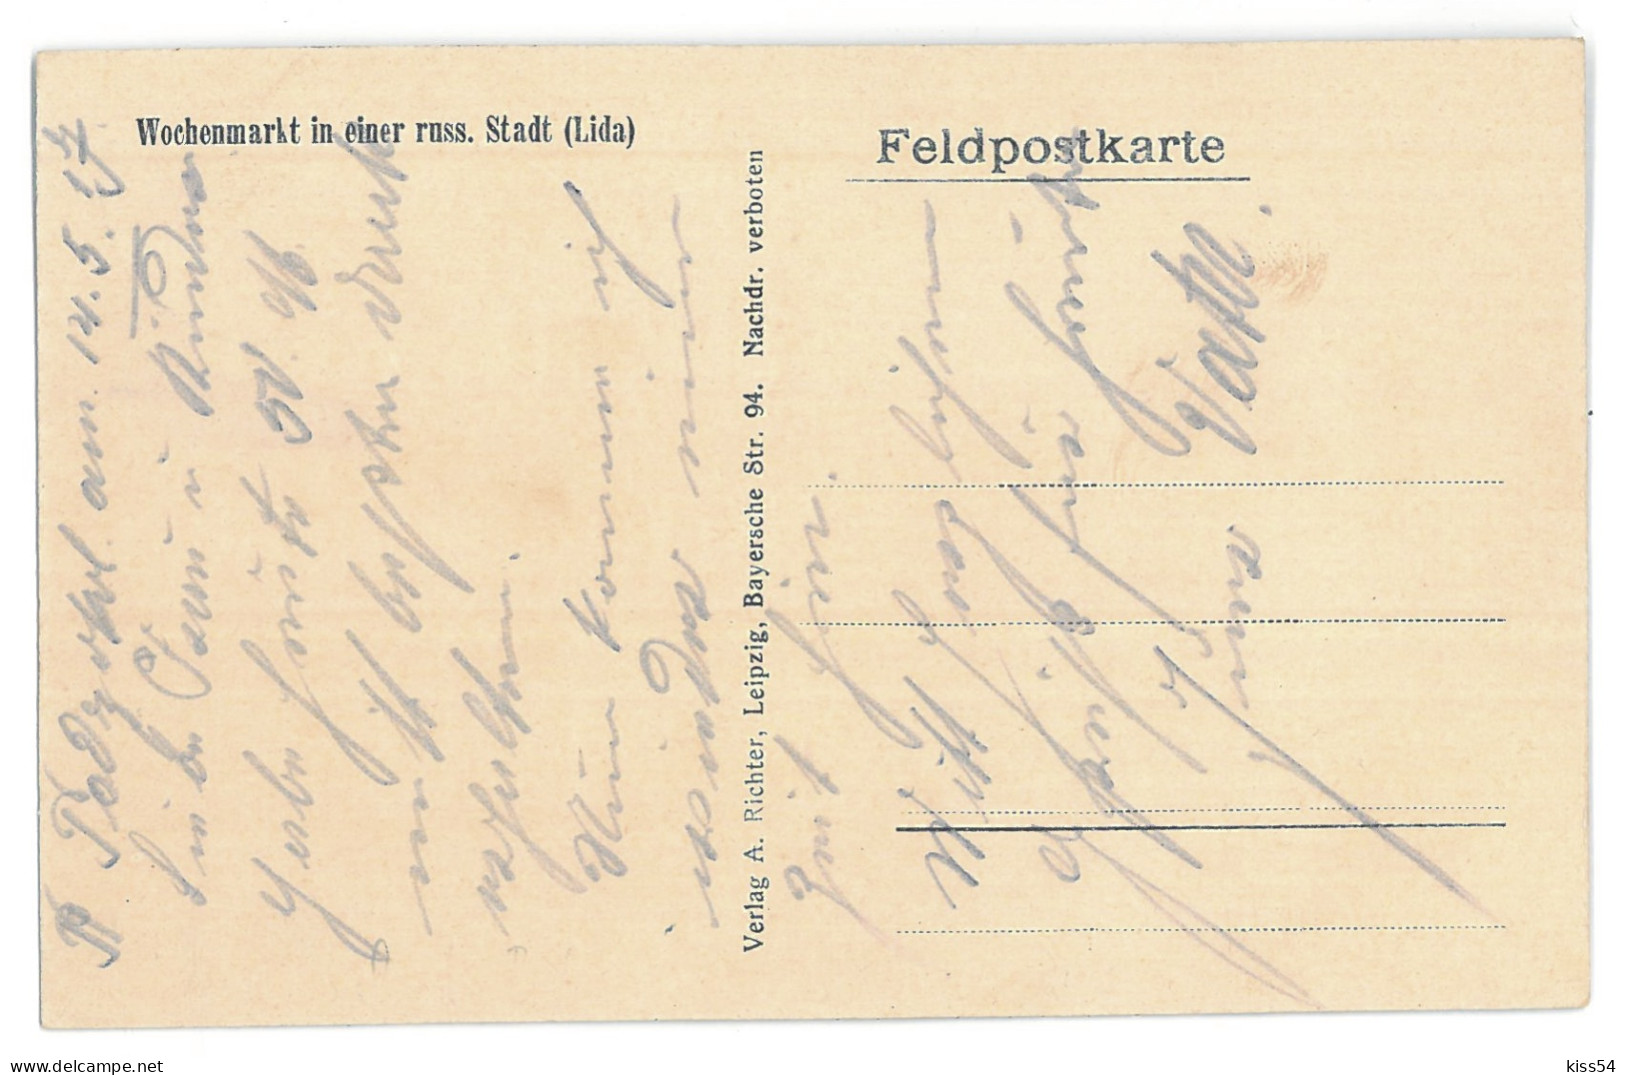 BL 27 - 13684 LIDA, Belarus, Market - Old Postcard - Used - 1917 - Weißrussland